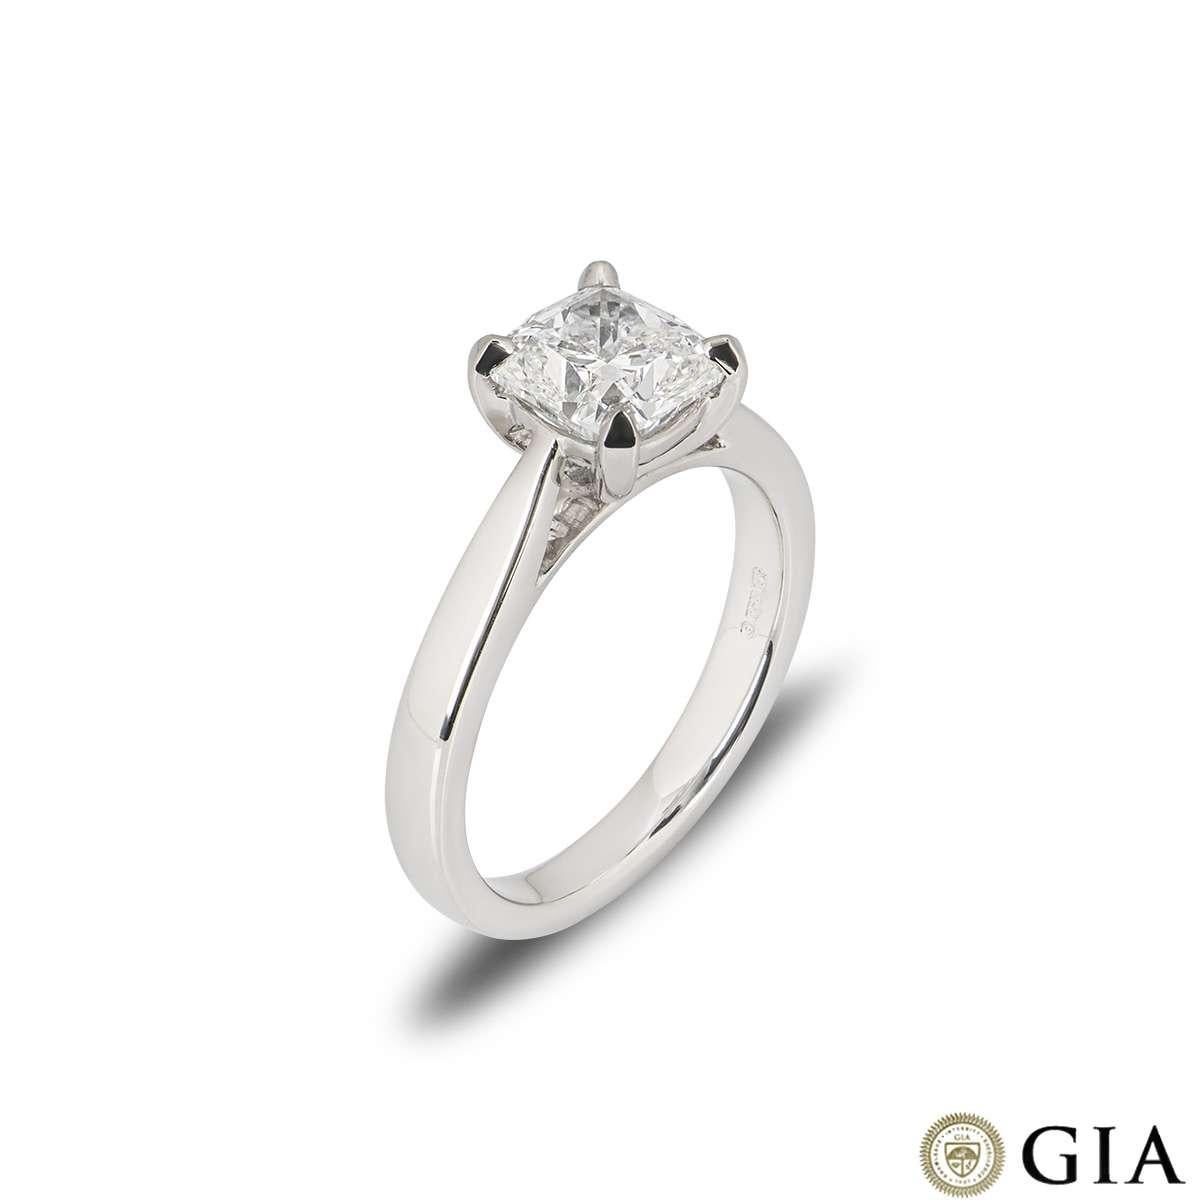 Ein atemberaubender Verlobungsring aus Platin mit Diamanten im Kissenschliff. Der Ring besteht aus einem kissenförmig geschliffenen Diamanten in einer Vier-Krallen-Fassung mit einem Gewicht von 1,70ct, Farbe F und Reinheit VS1. Der Ring hat derzeit